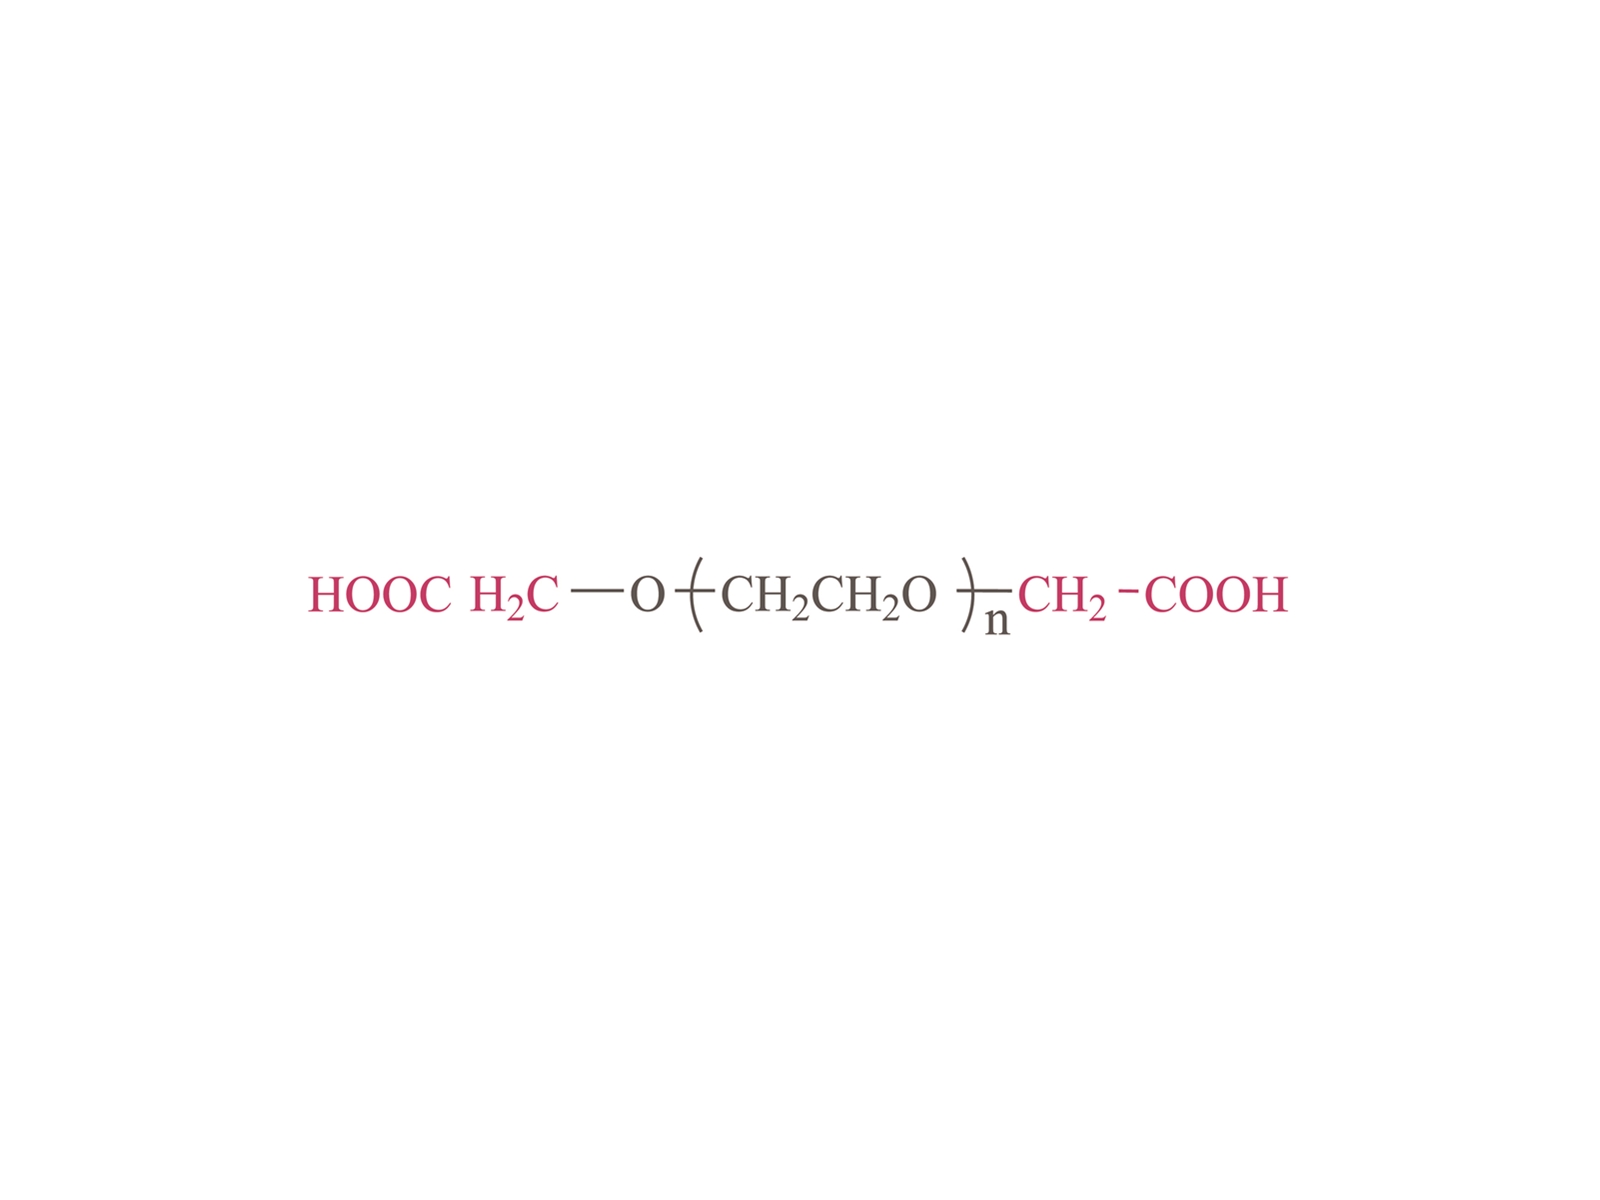 α, ω-dicarboxyl โพลี (เอทิลีนไกลคอล) [HOOC-PEG-CoOH] CAS: 39927-08-7